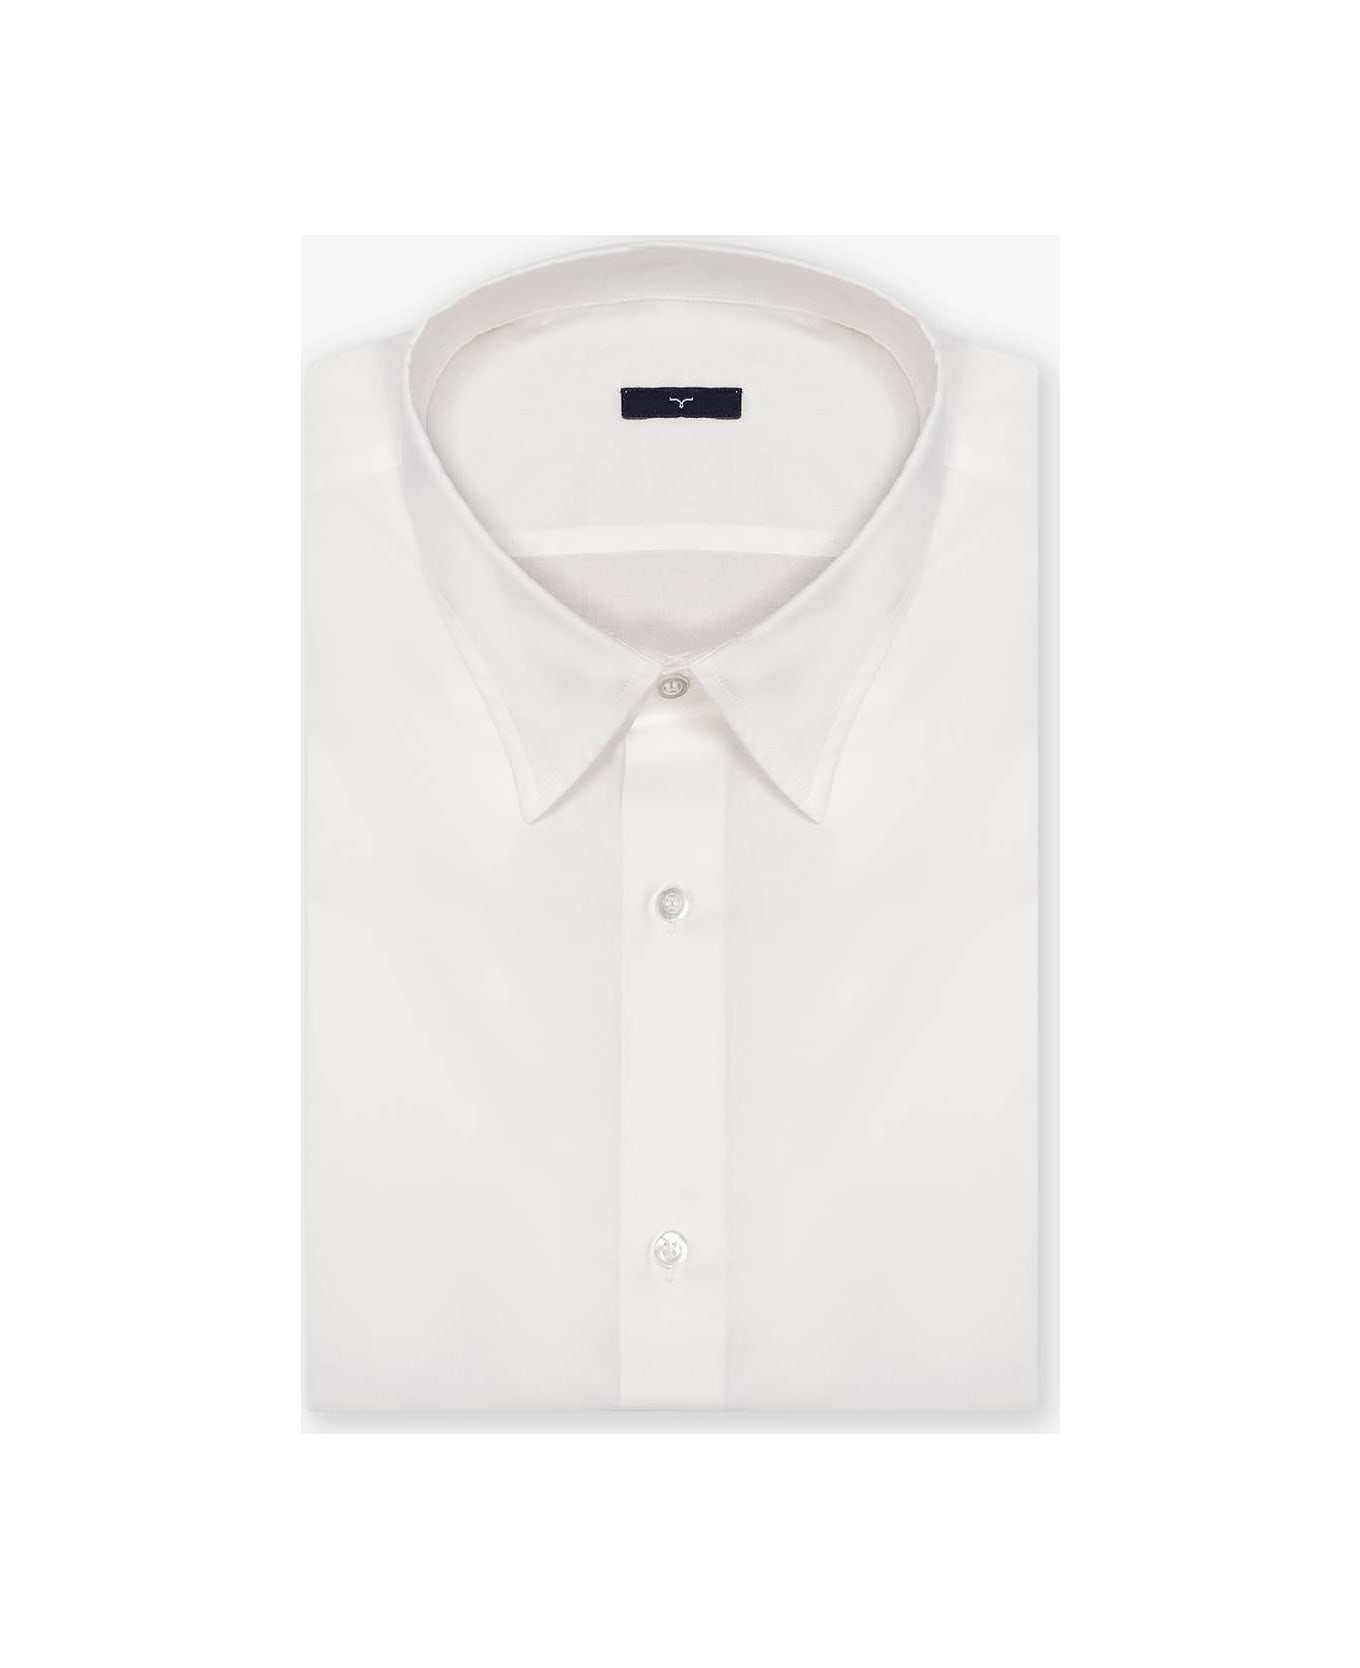 Larusmiani Light Cotton Shirt T-Shirt - White